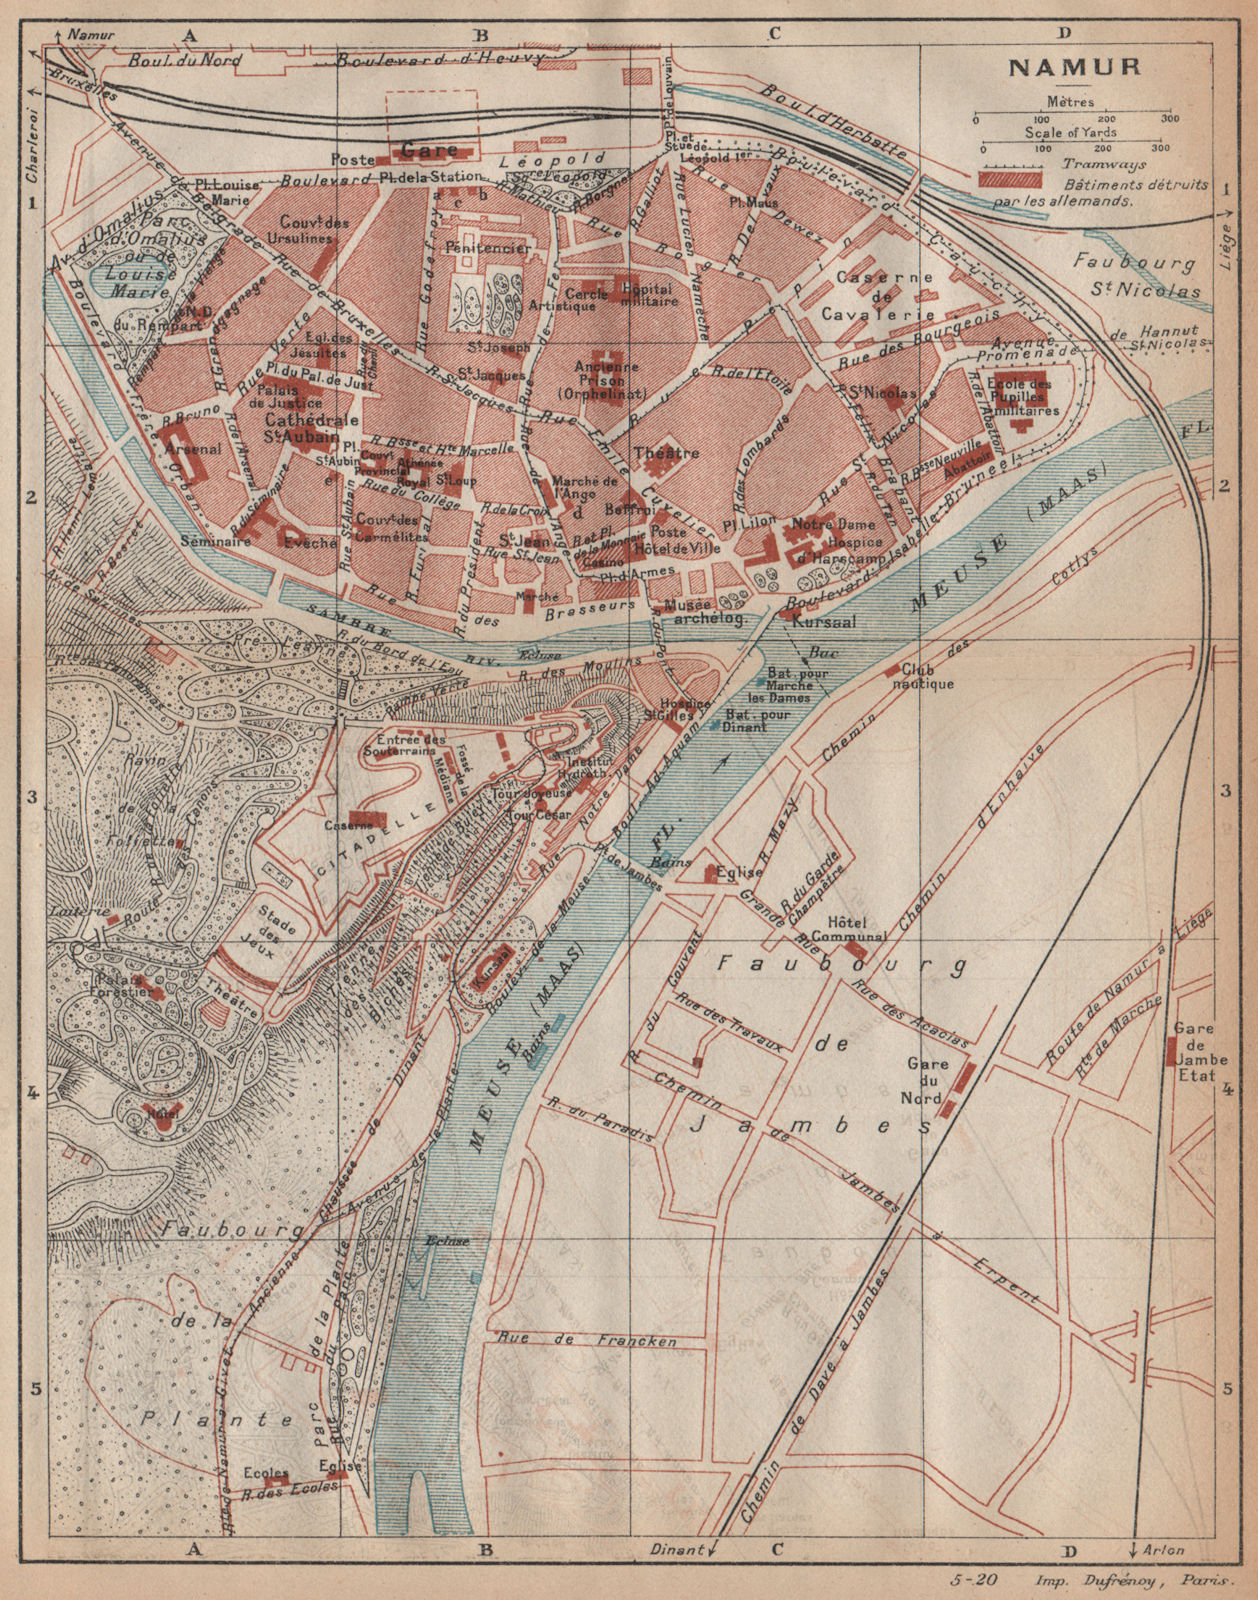 Associate Product NAMUR. Vintage town city map plan. Belgium 1920 old antique chart